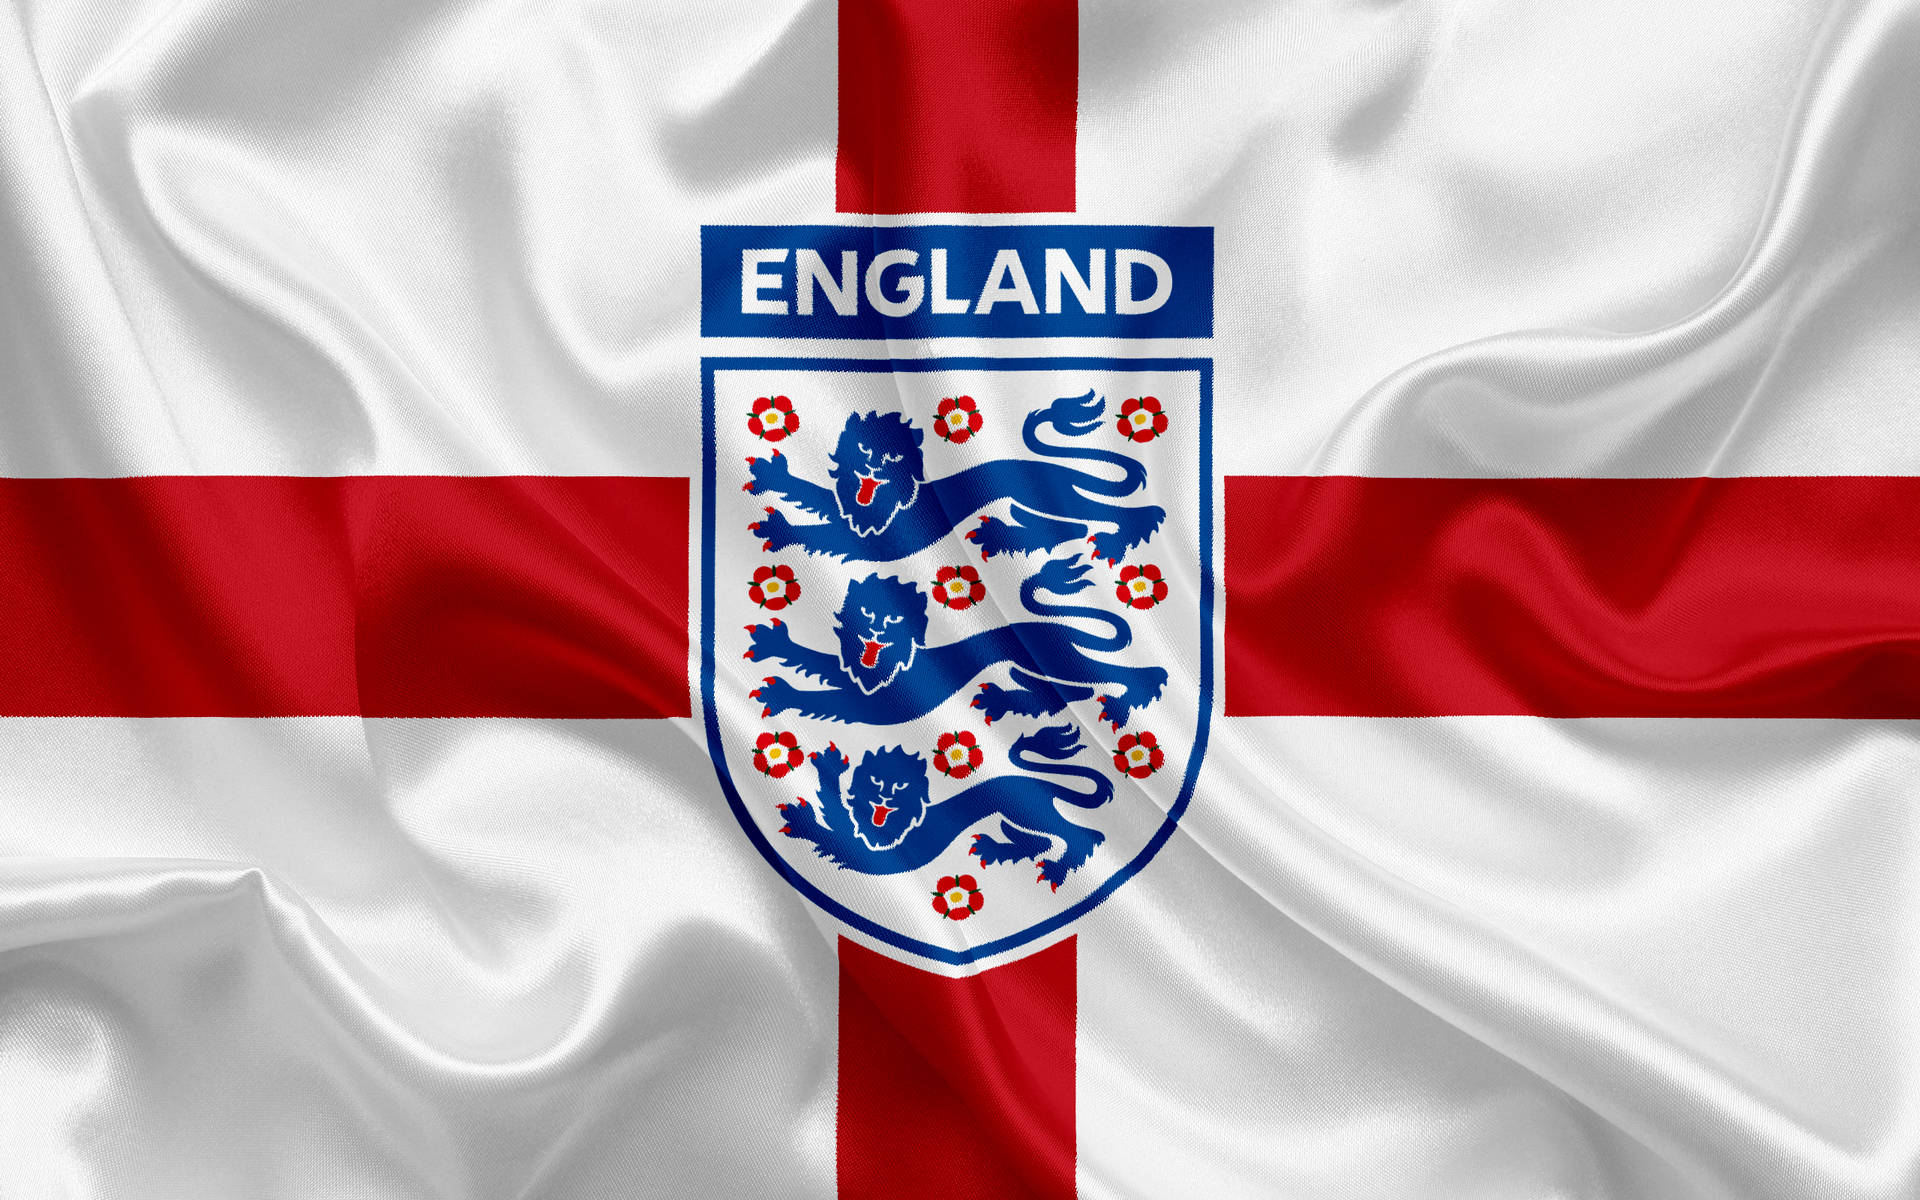 England National Football Team Association Wallpaper